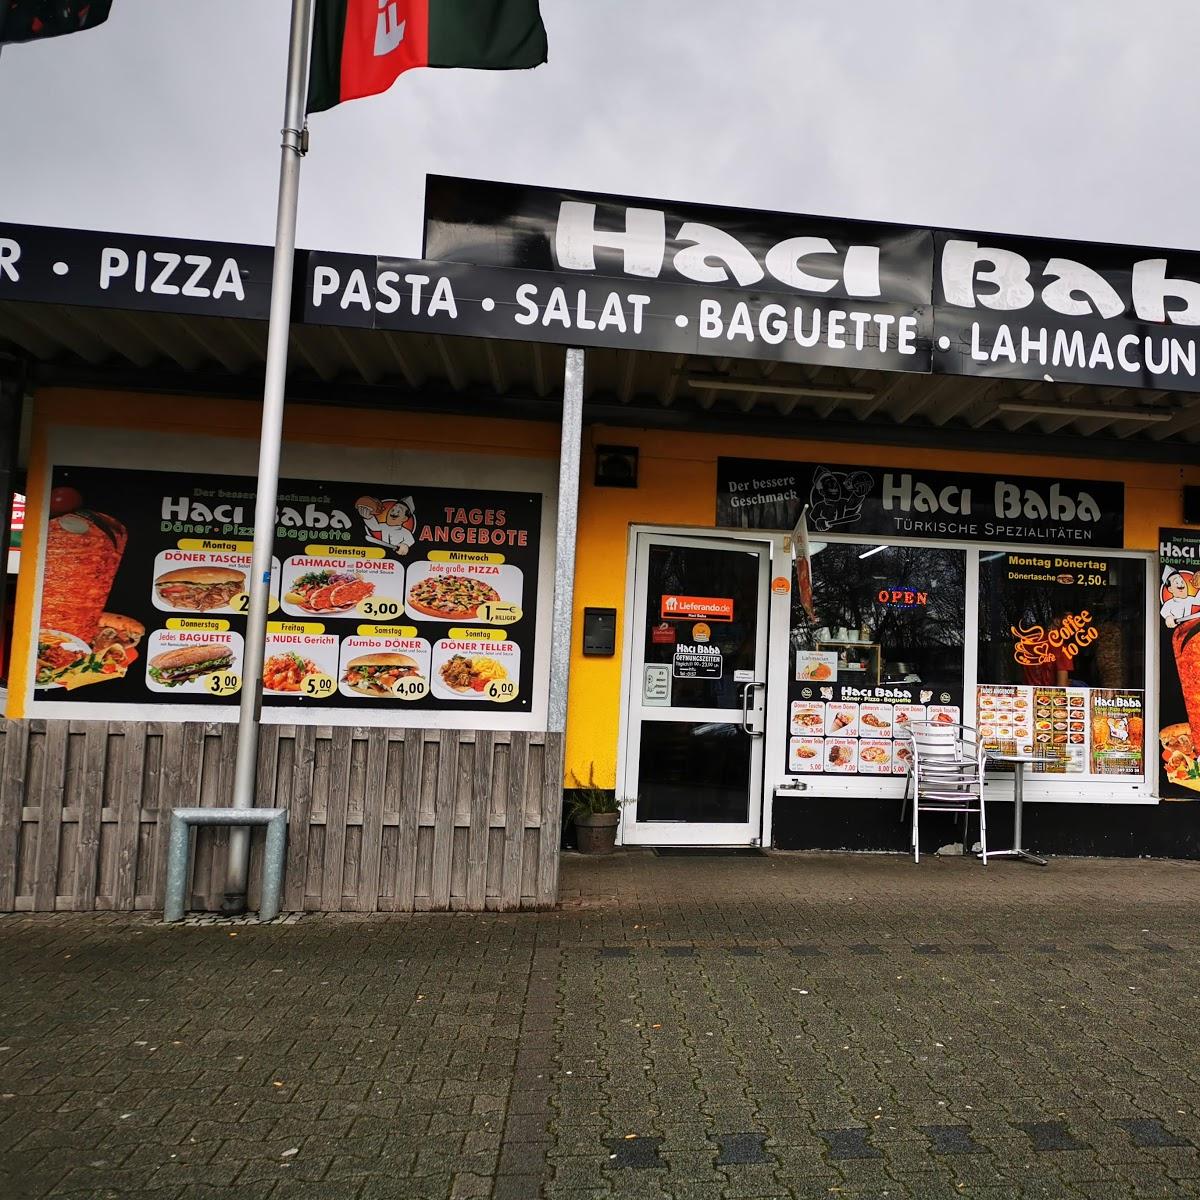 Restaurant "Haci Baba Döner Und Pizza Haus" in Dortmund